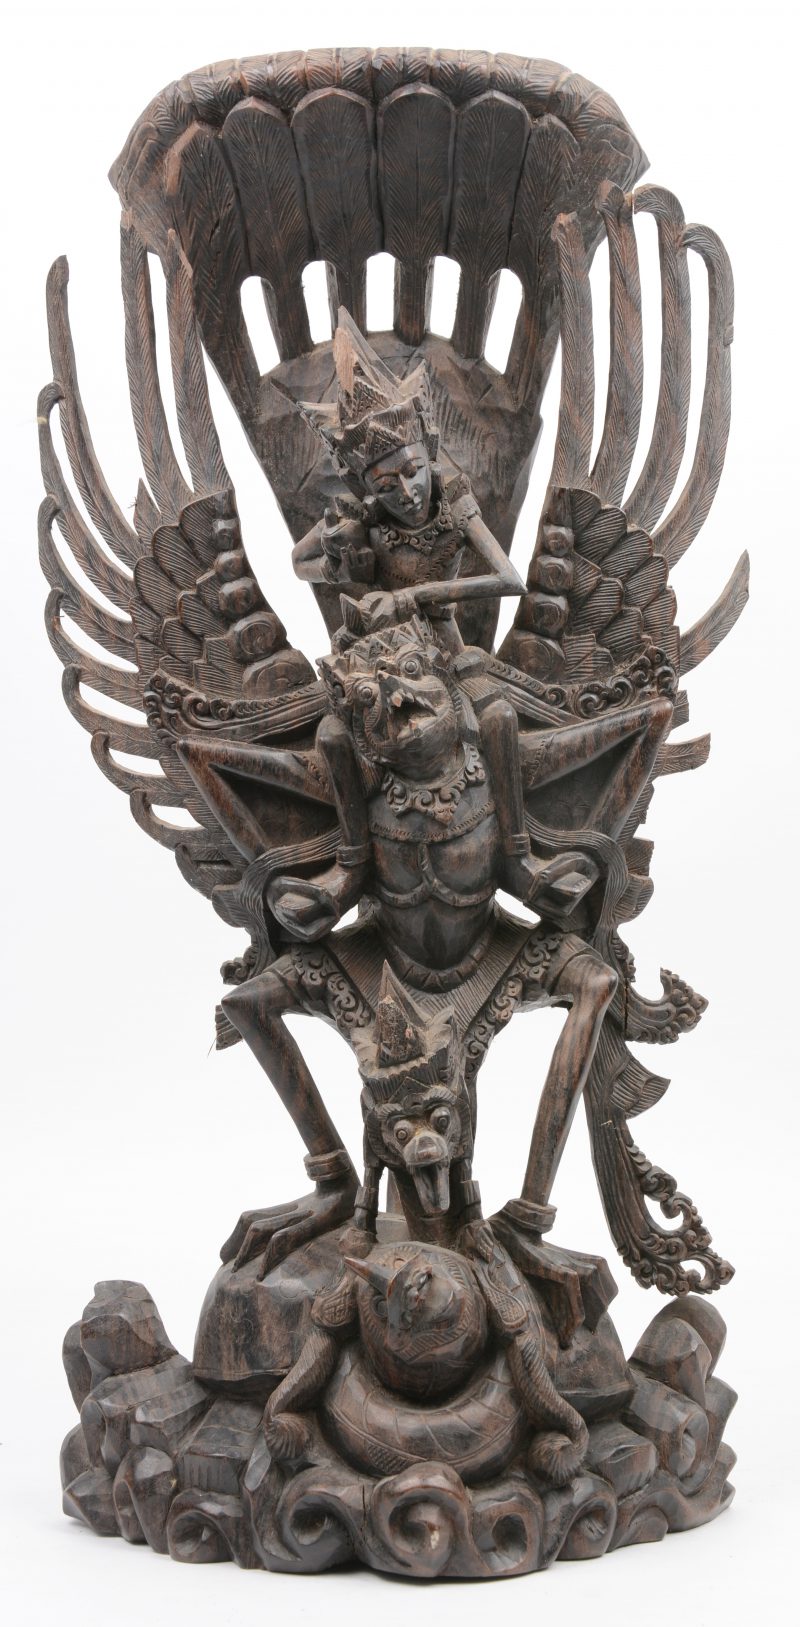 Een Garudabeeld van gesculpteerd hout.